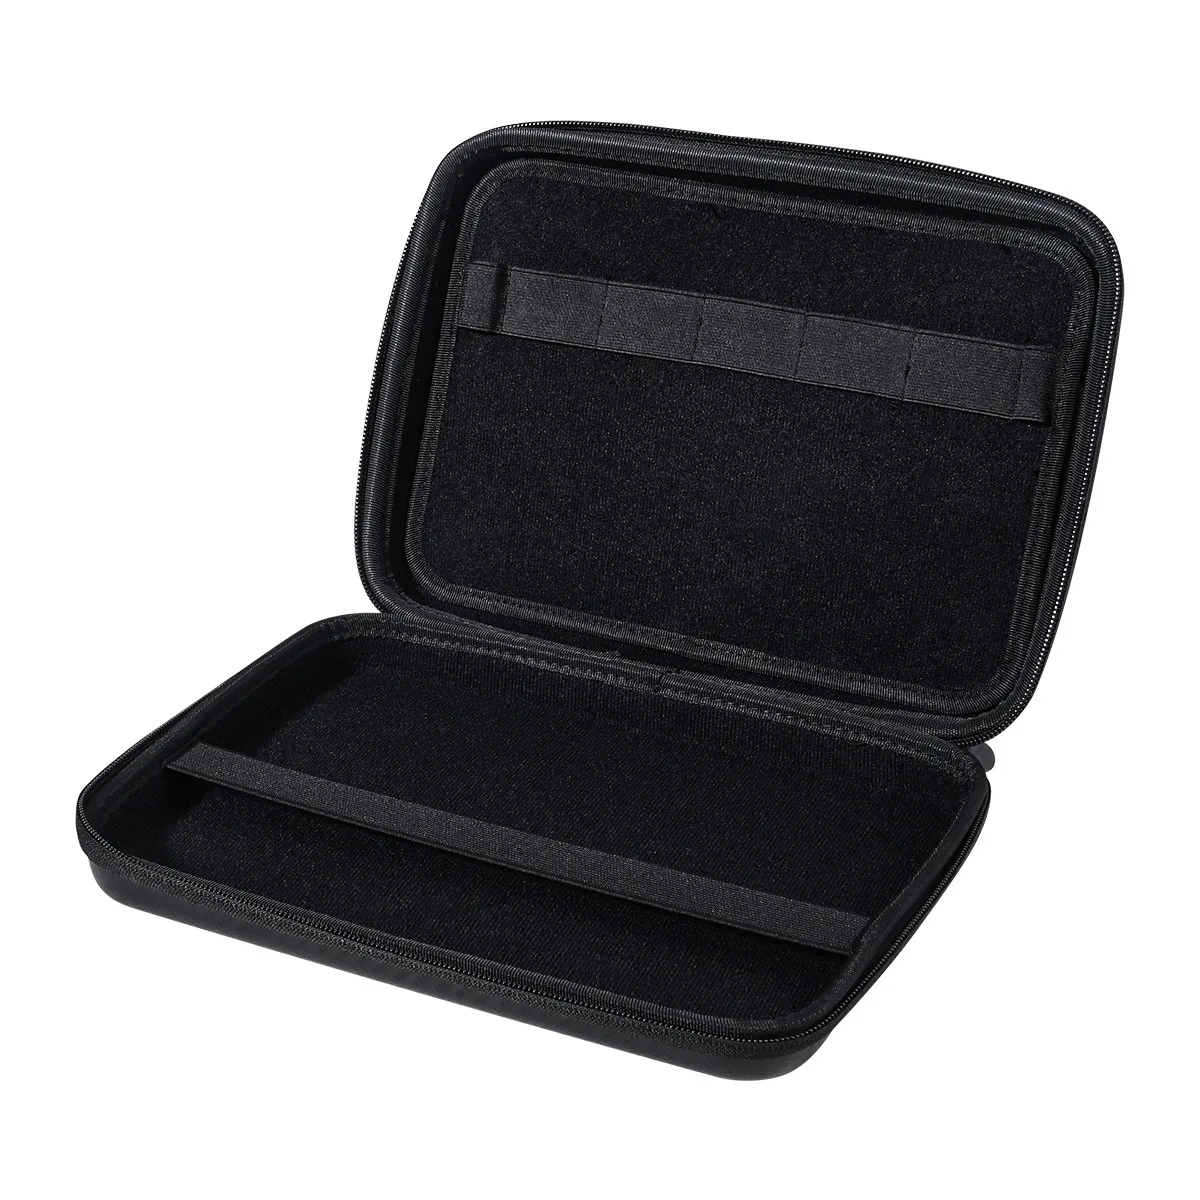 ORICO планшет Портативная сумка для хранения противоударный чехол дорожная сумка для iPad kindle жесткий диск HDD наушники power bank U диск мышь